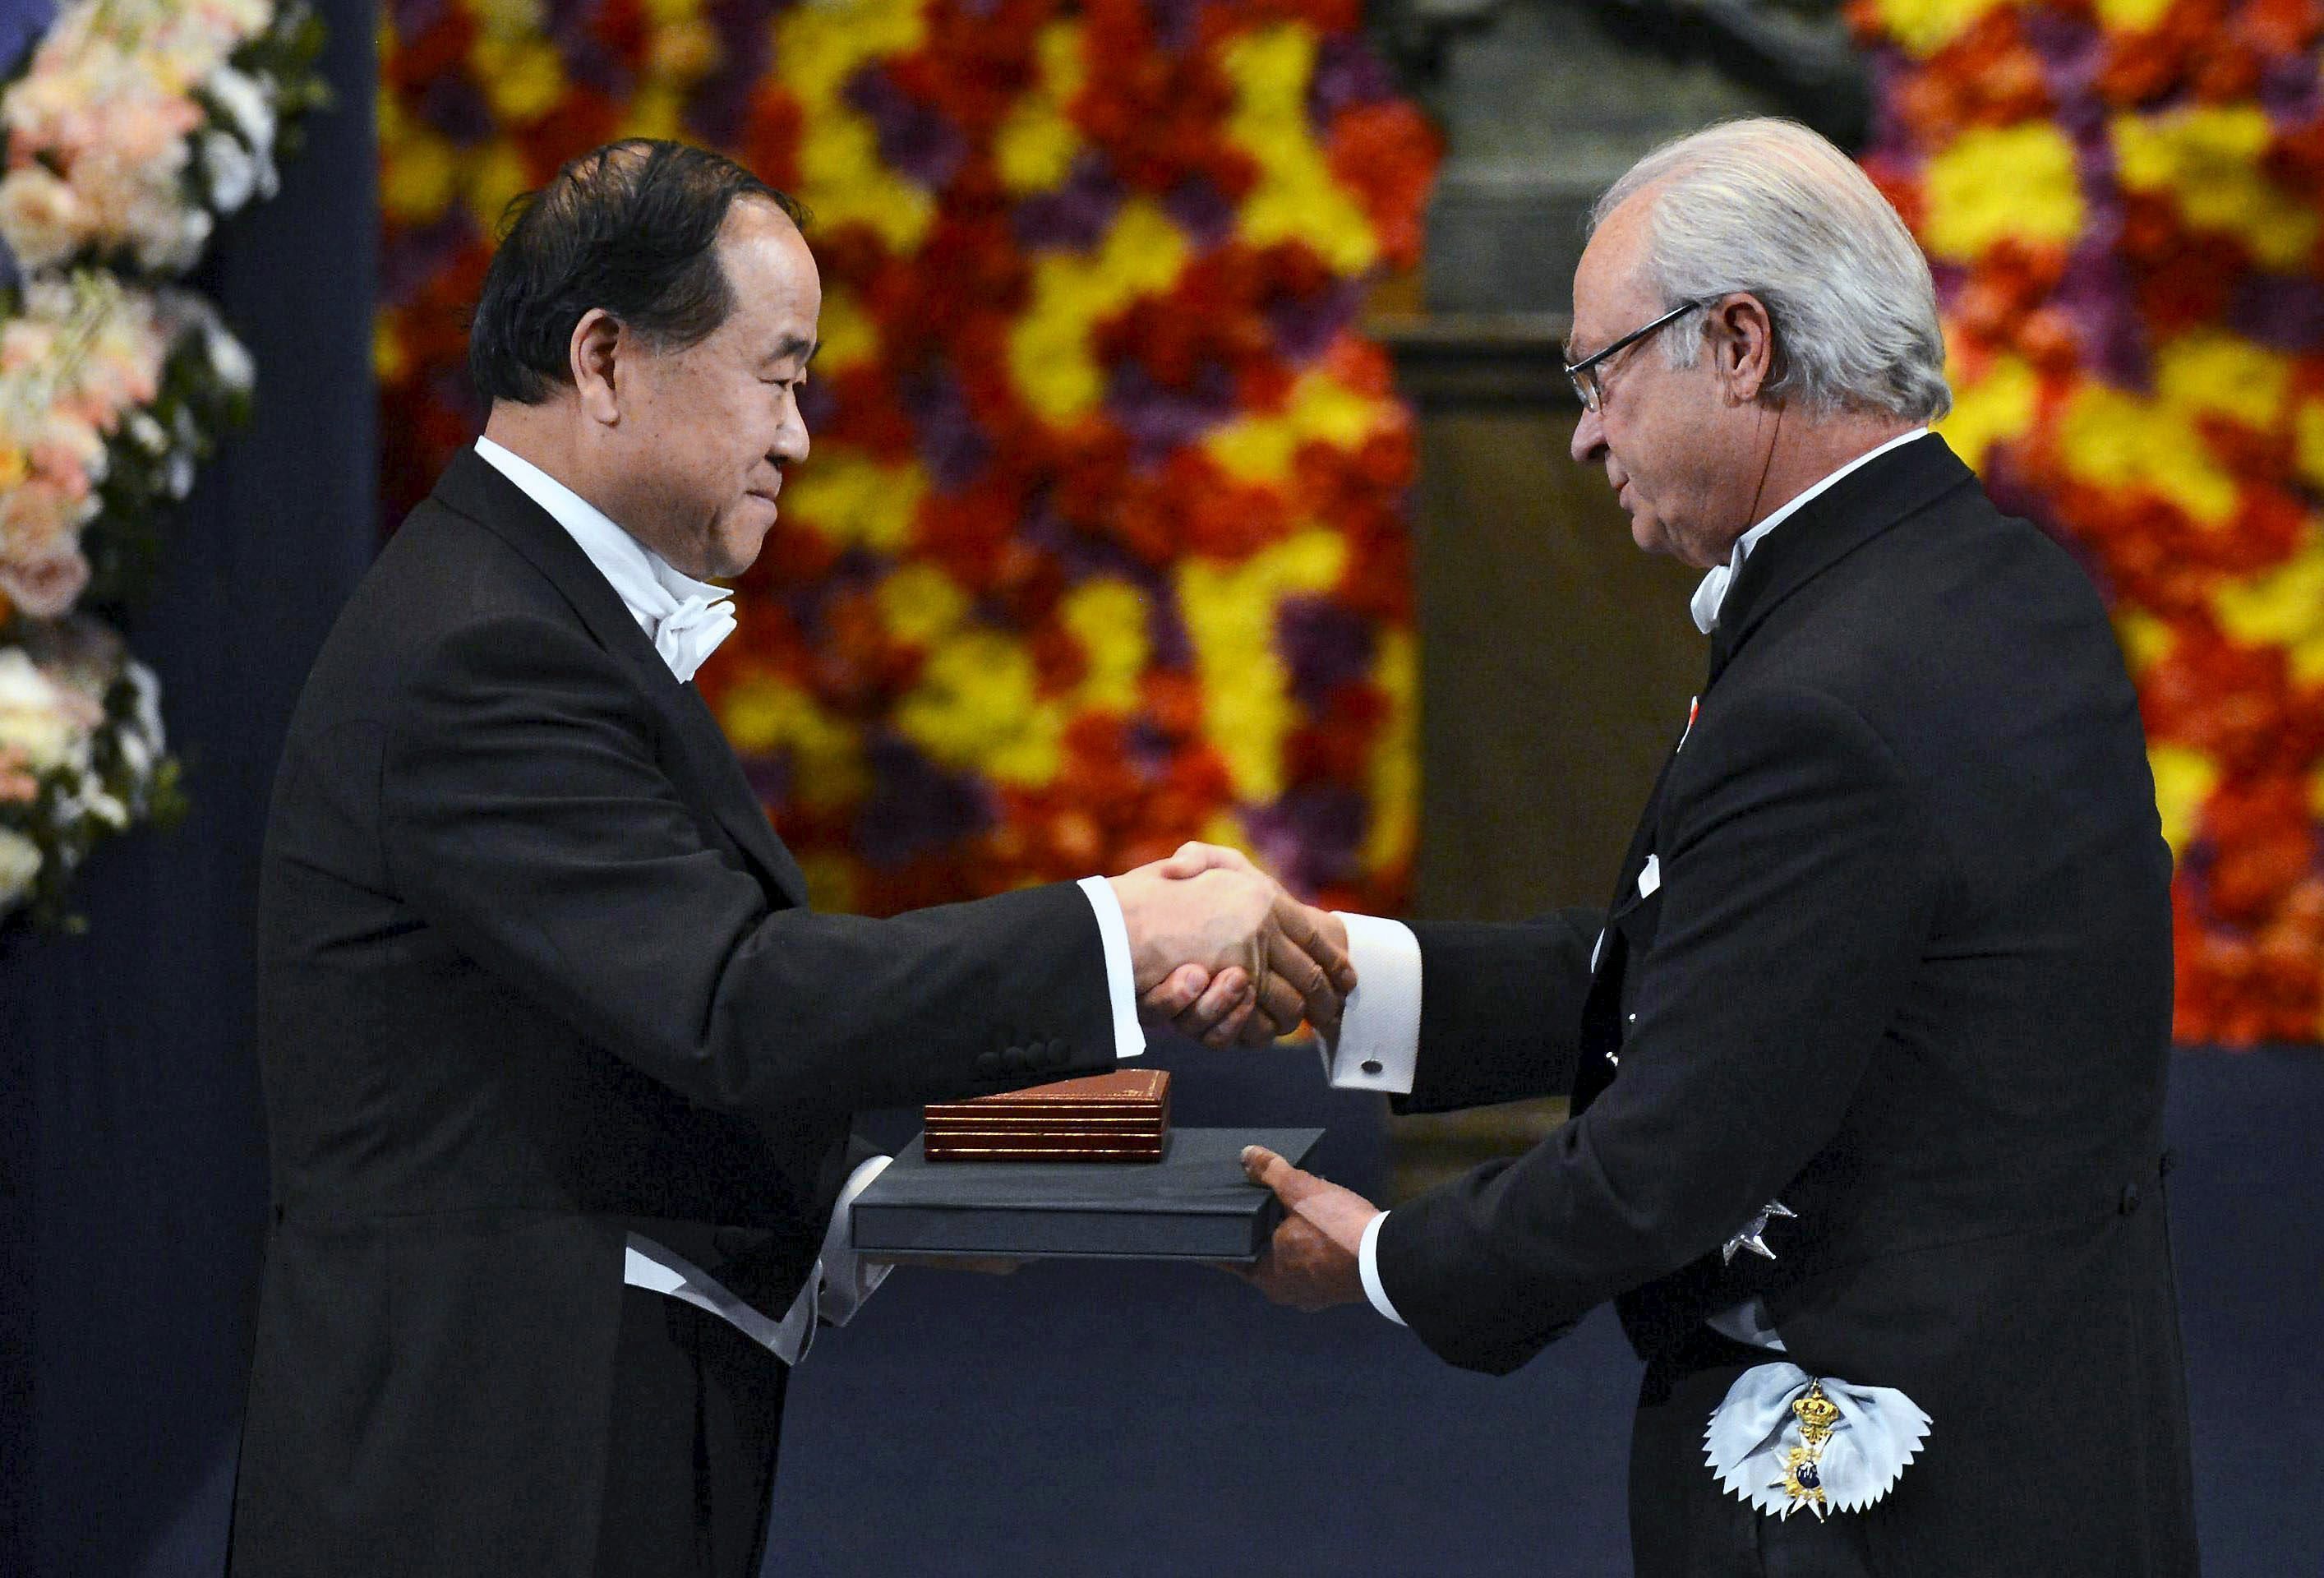 El rey Carlos Gustavo de Suecia (d) entrega el Nobel de Literatura al chino Mo Yan durante la ceremonia de entrega de los Premios Nobel de Física, Química, Medicina, Literatura y Economía en el Konserthuset (Sala de Conciertos) de Estocolmo.